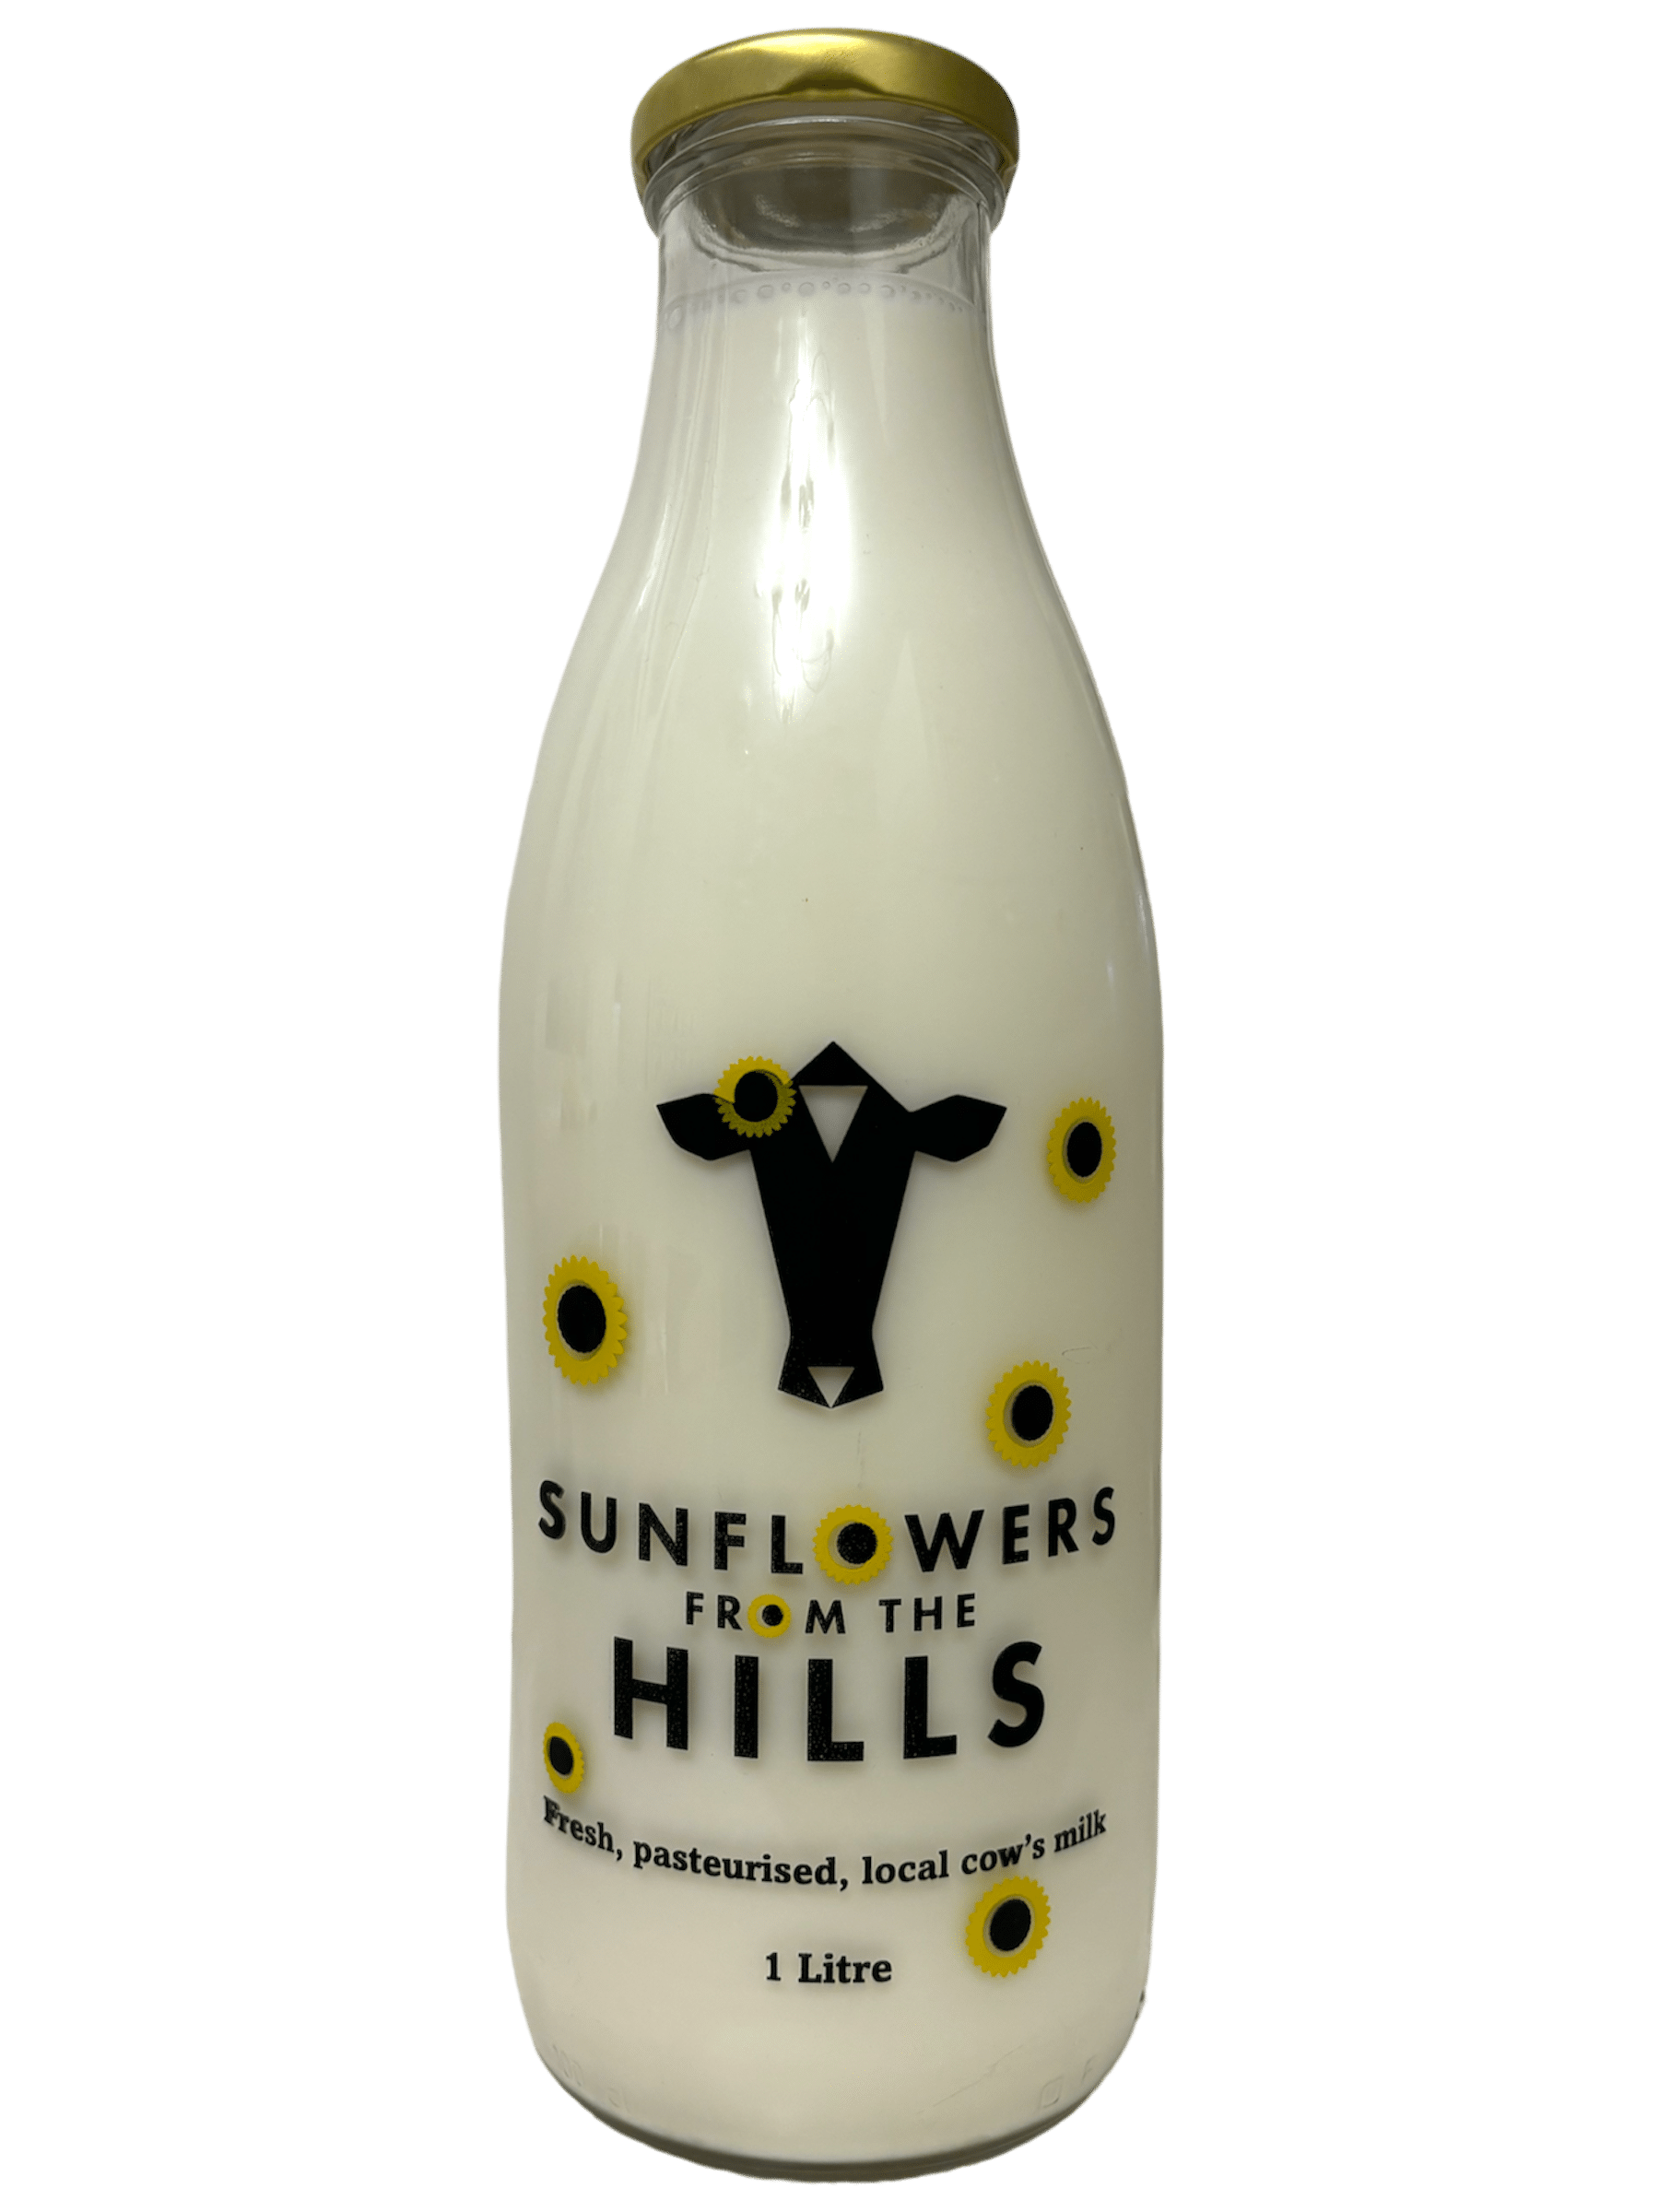 Milk From The Hills - www.Kelis.info #KelisTheBottleBank